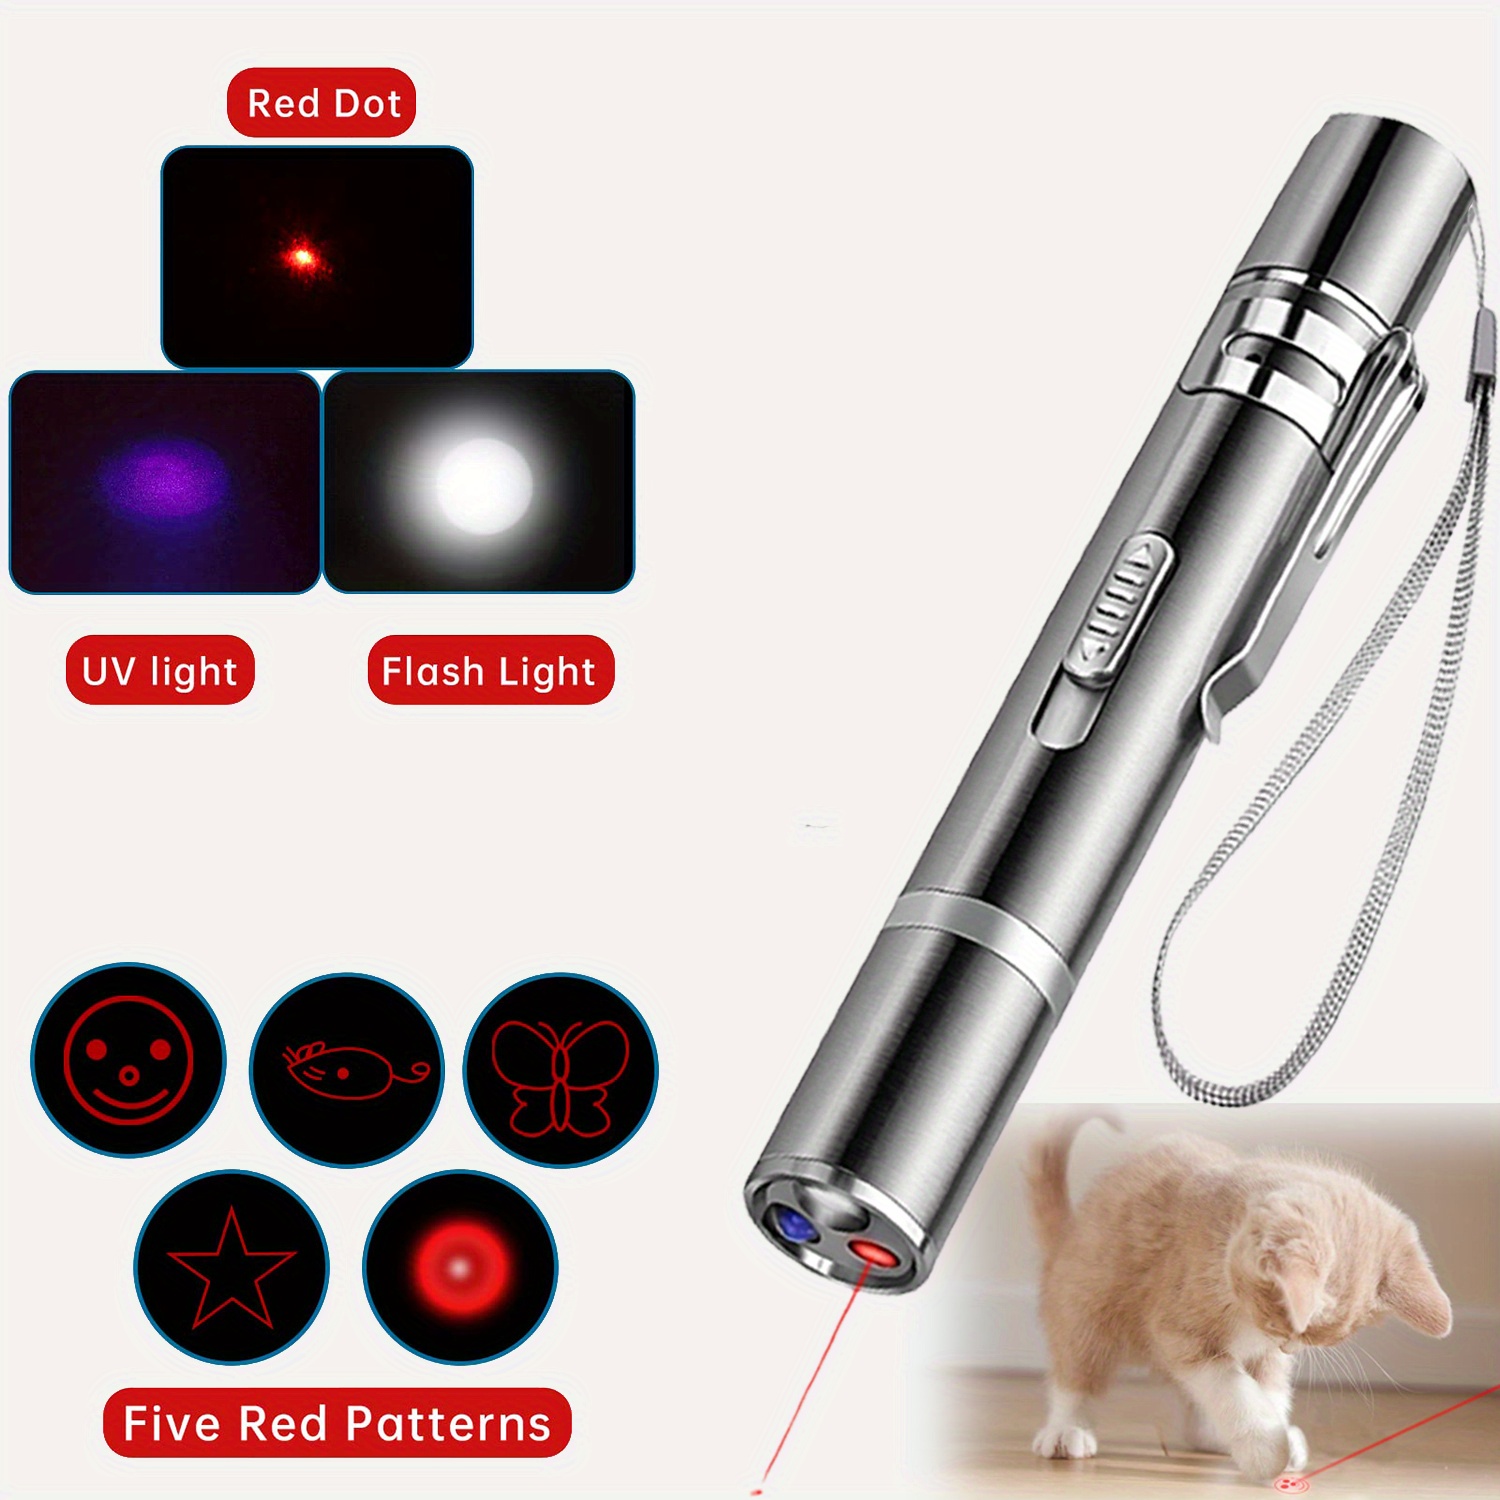 Acheter un pointeur laser pour chat